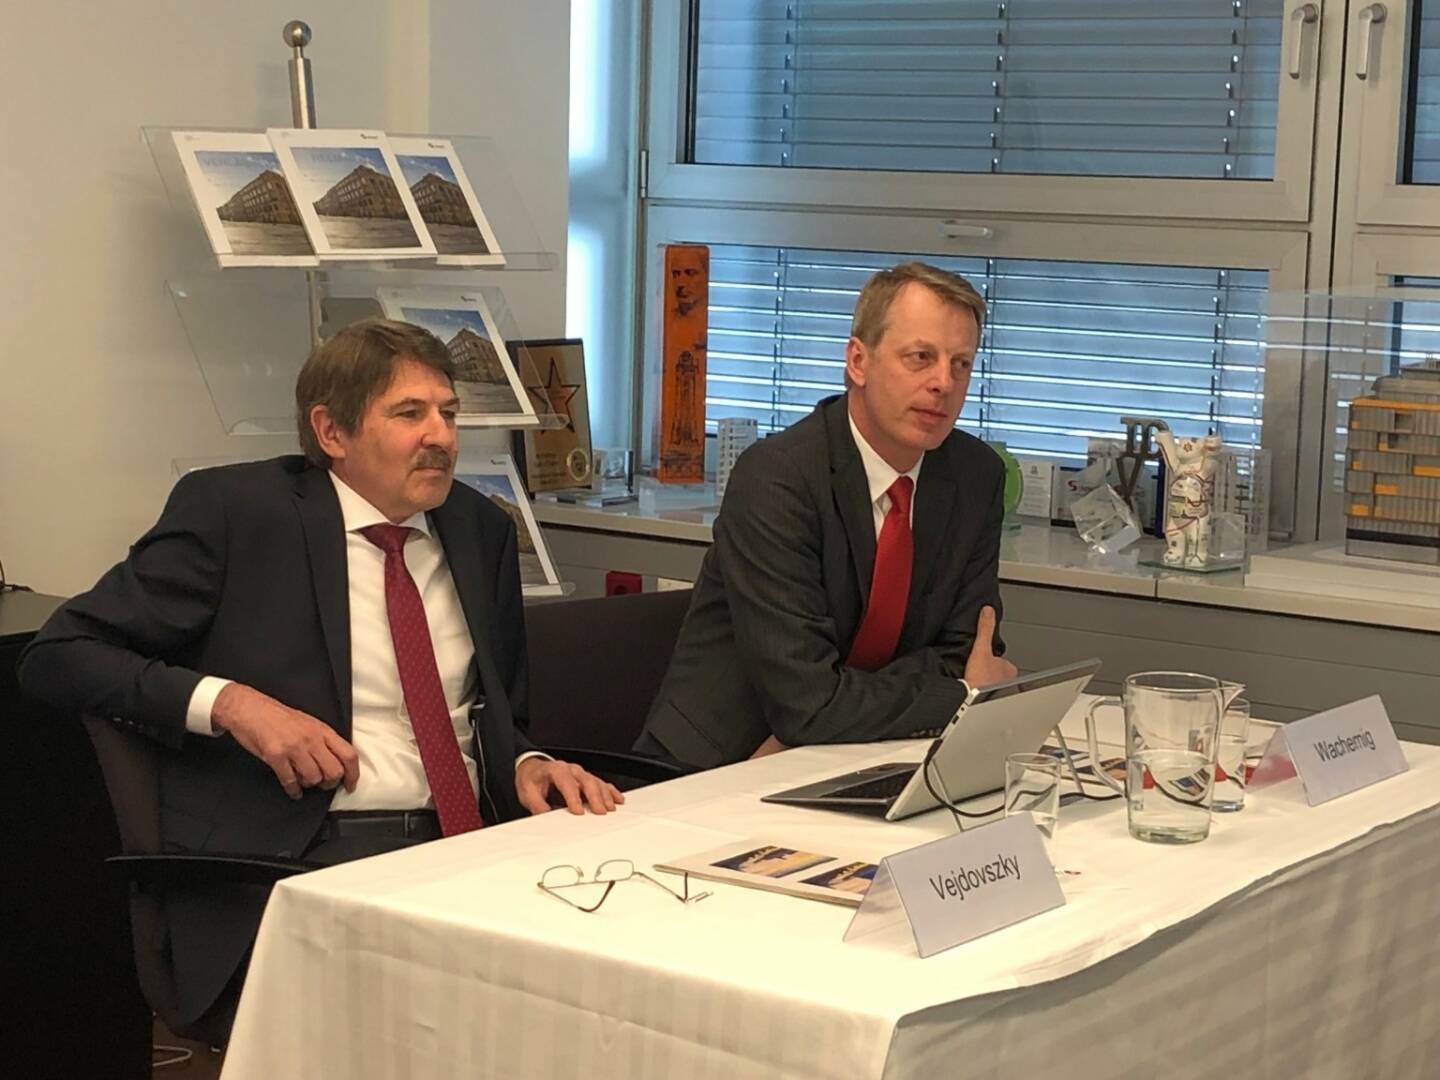 S Immo AG-Pressekonferenz 3.4. 2018: Vorstände Ernst Vejodoszky, Friedrich Wachernig